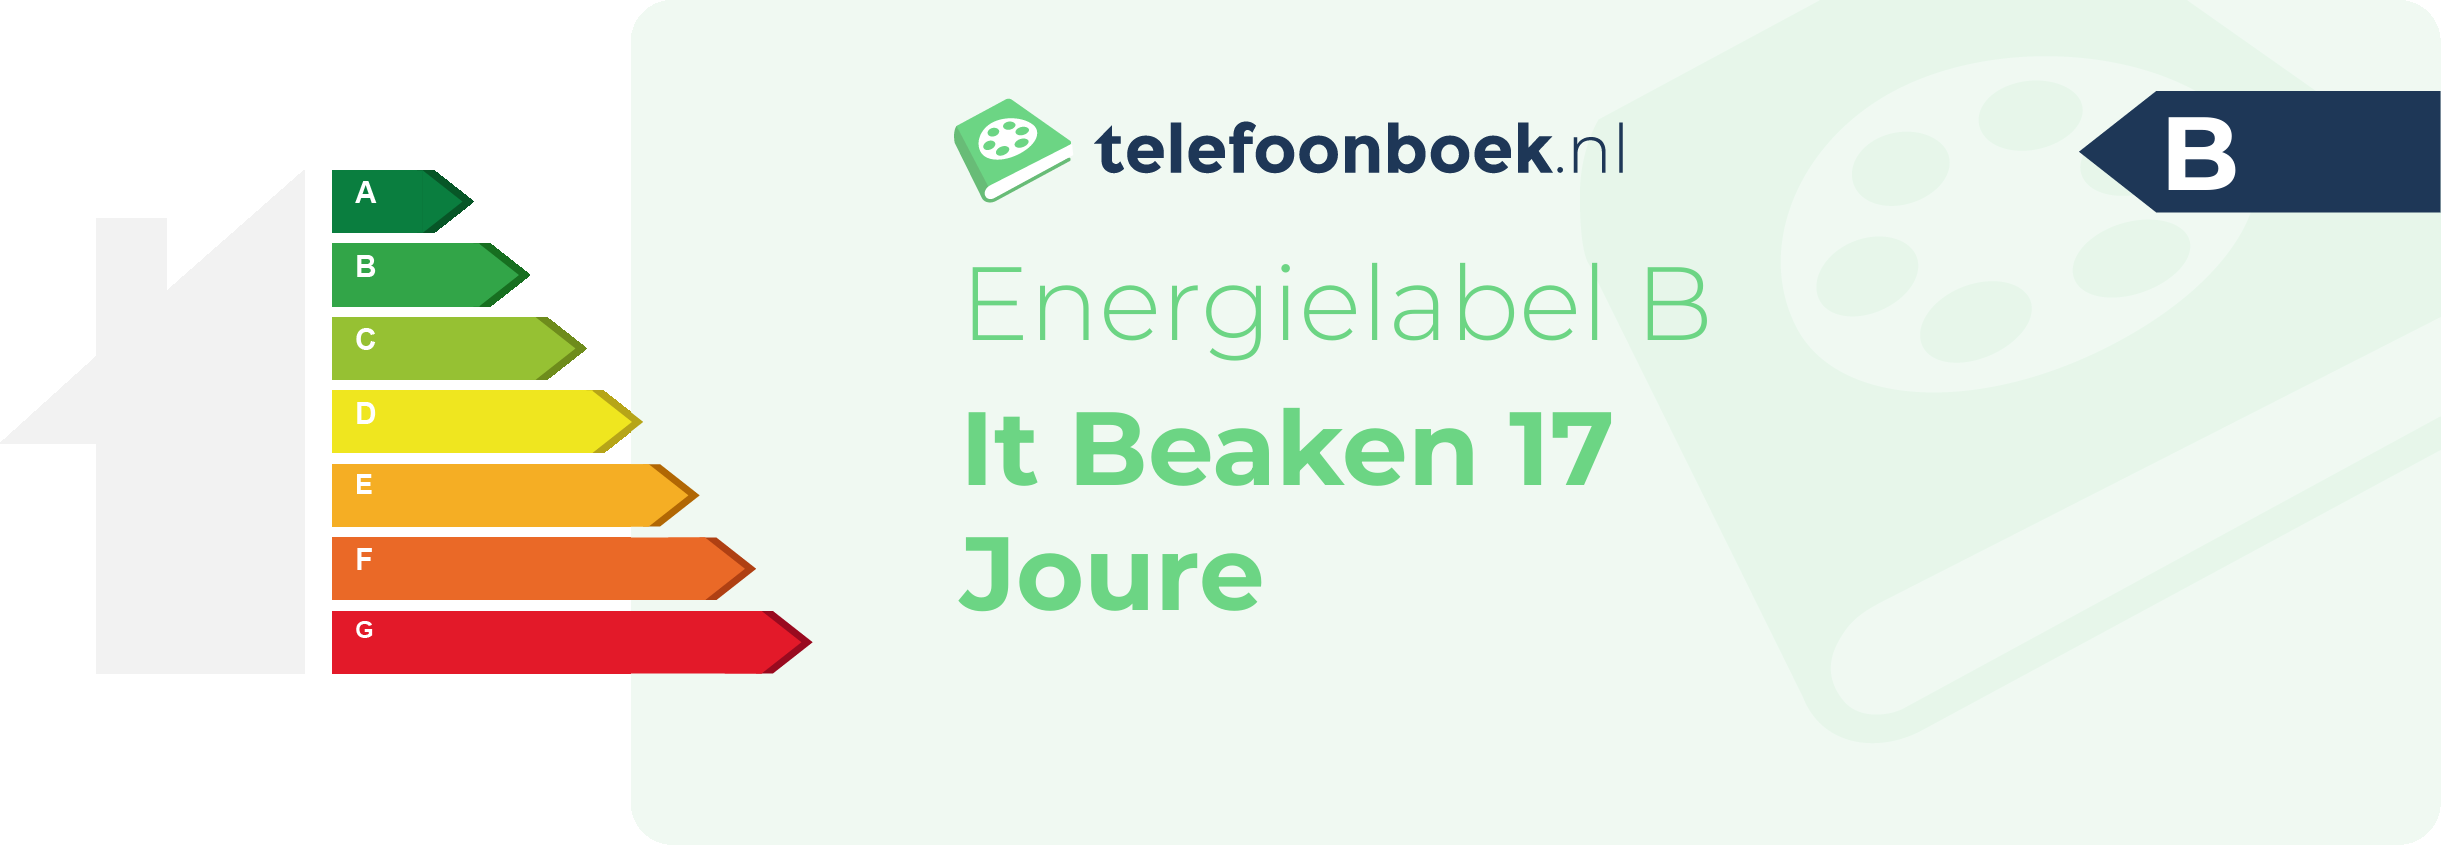 Energielabel It Beaken 17 Joure